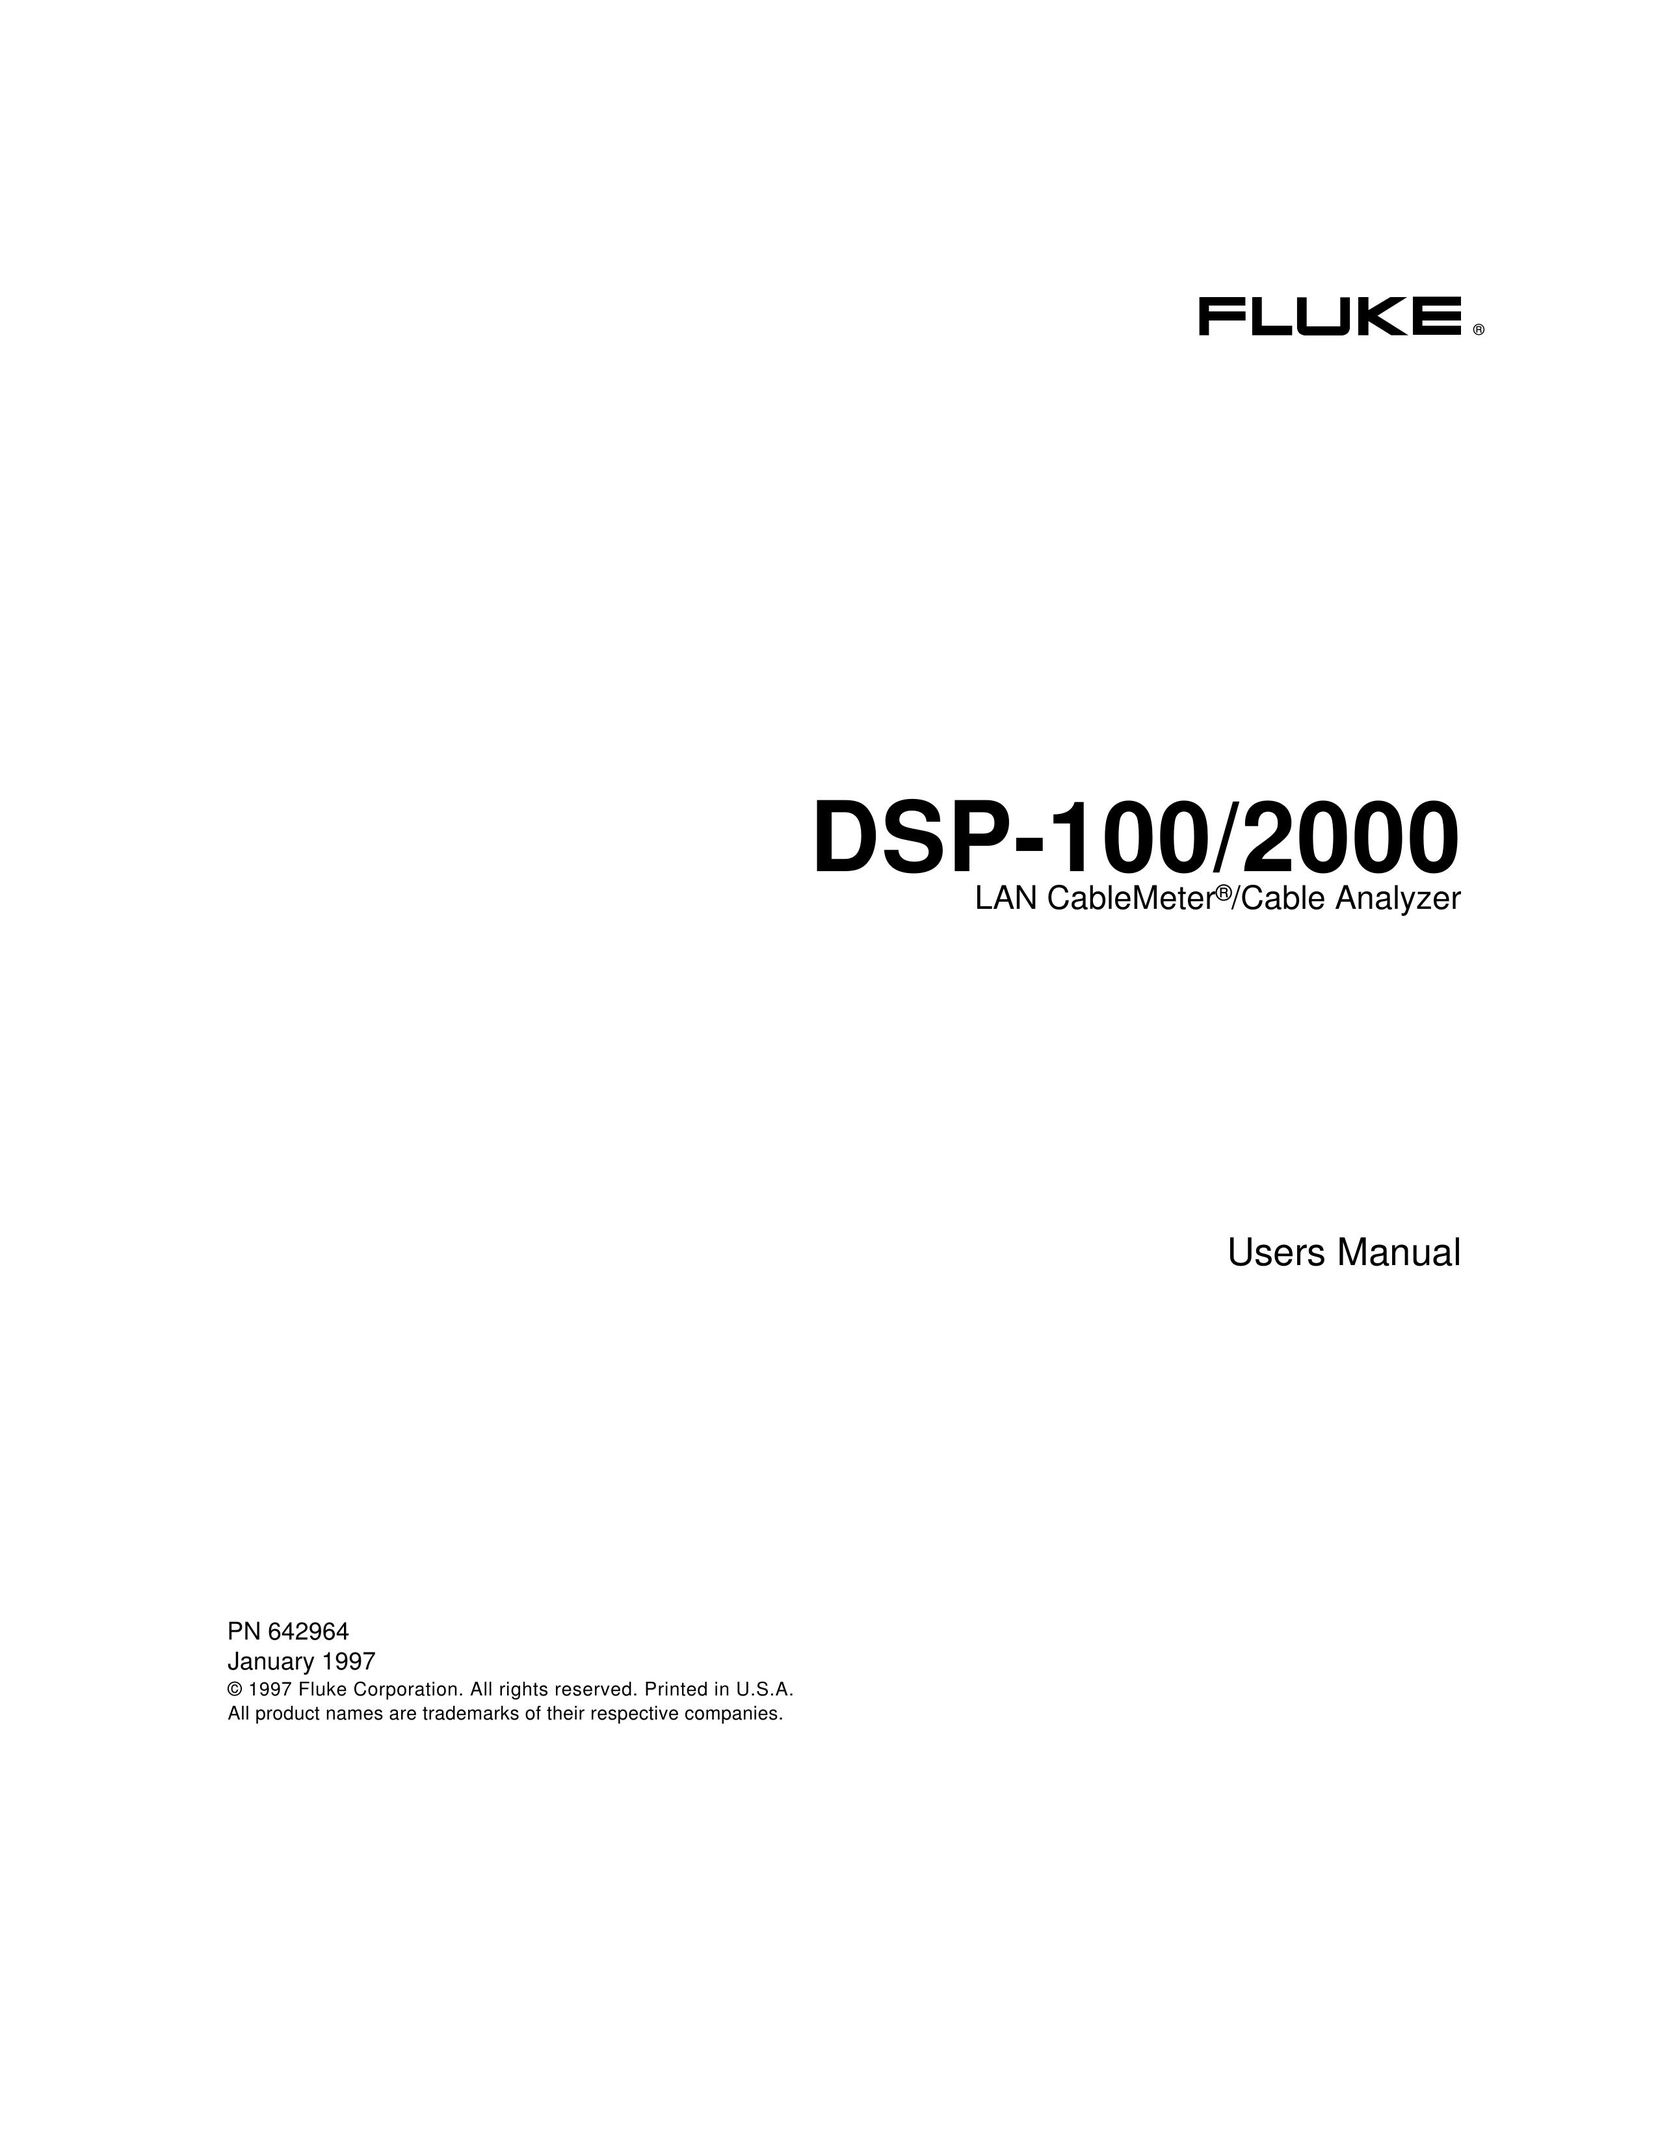 Fluke DSP-2000 Network Card User Manual